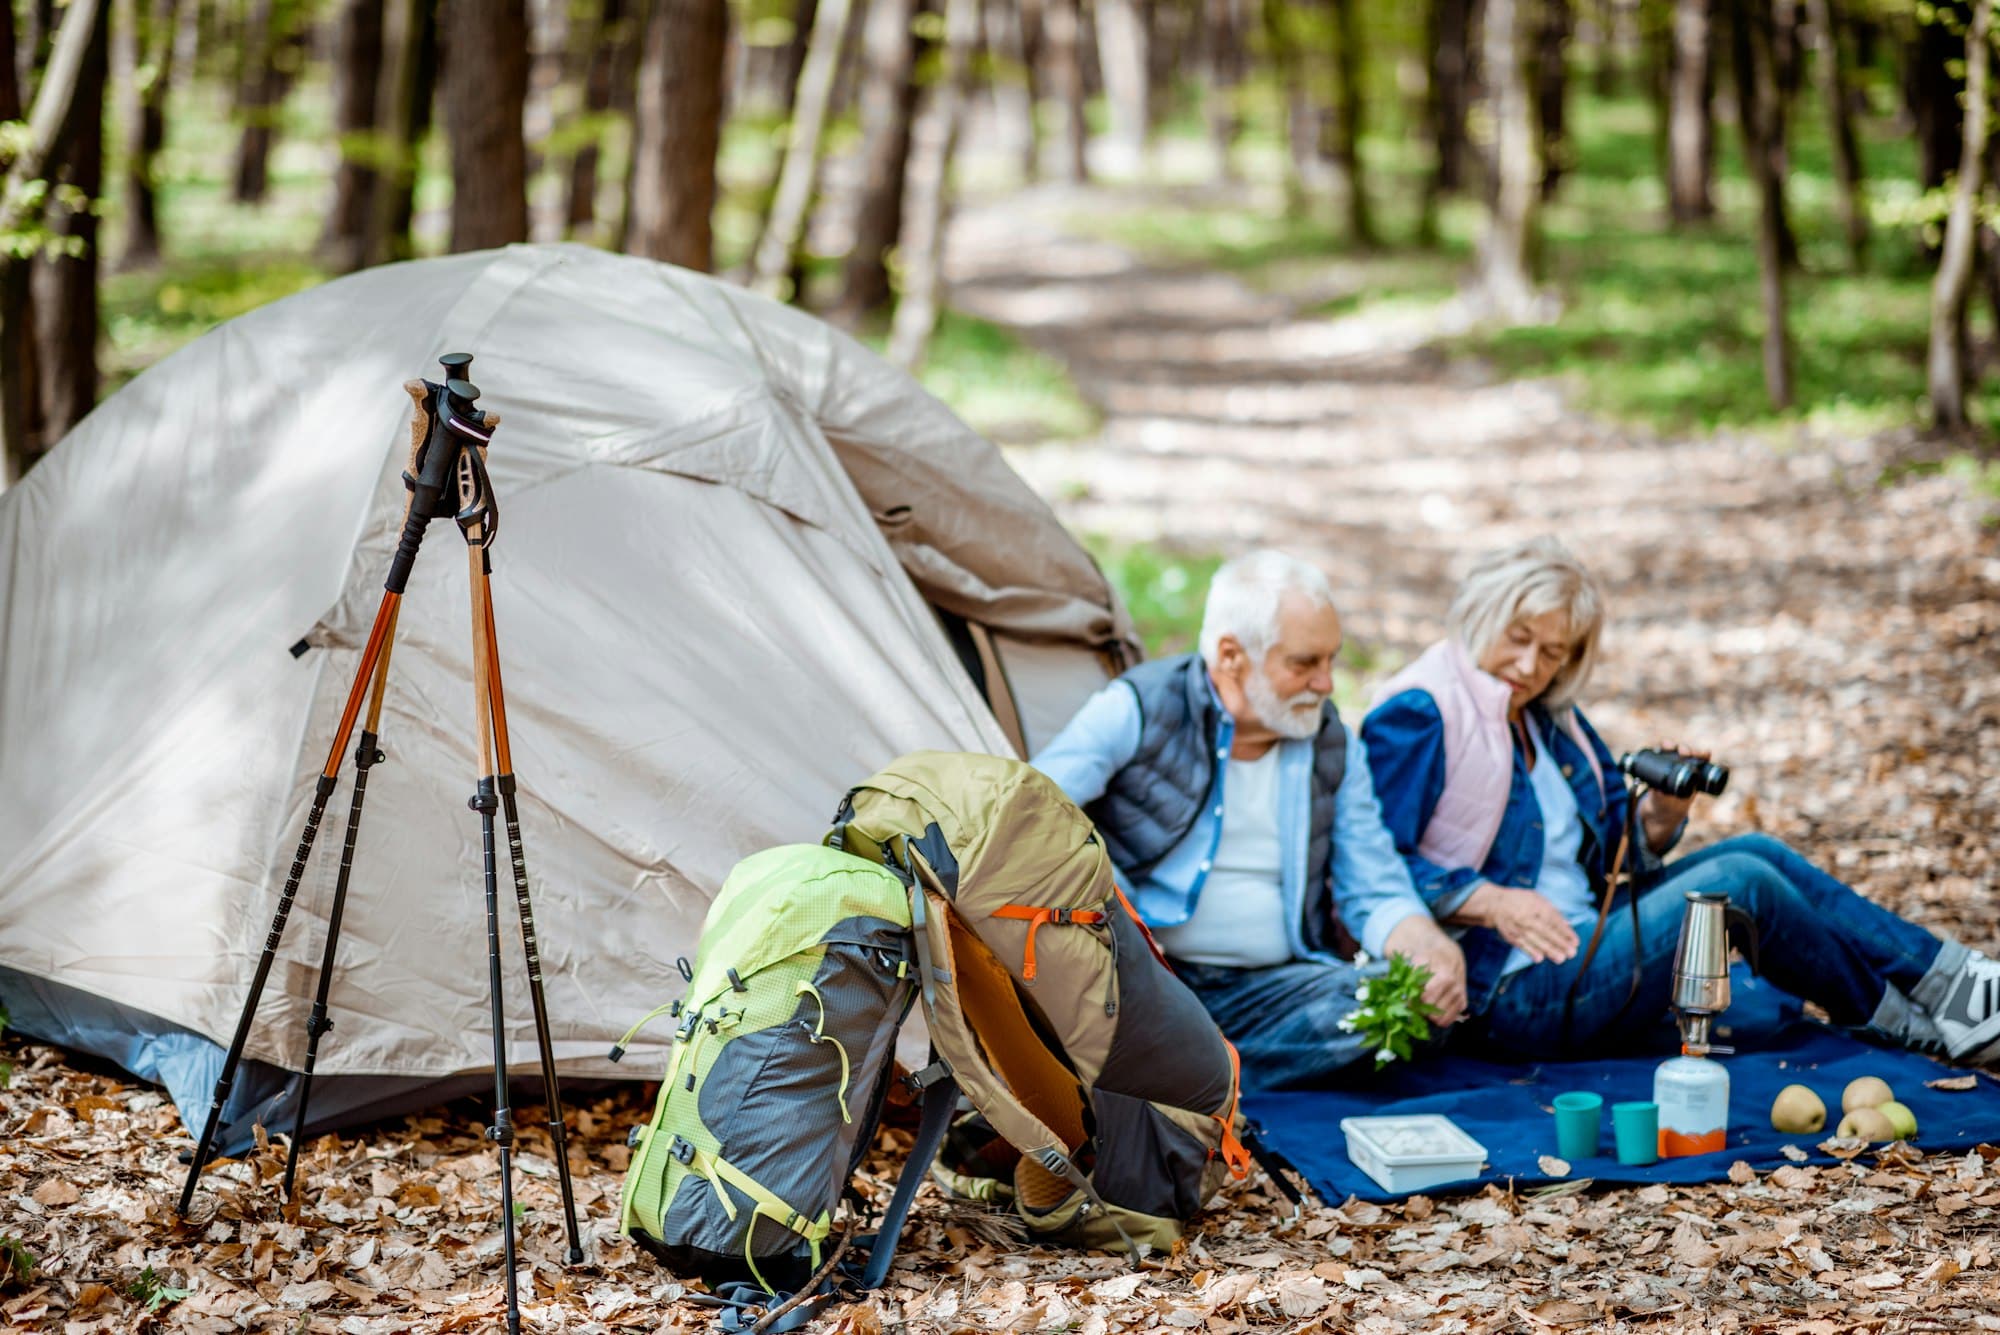 Les options de loisirs en plein air dans les campings France